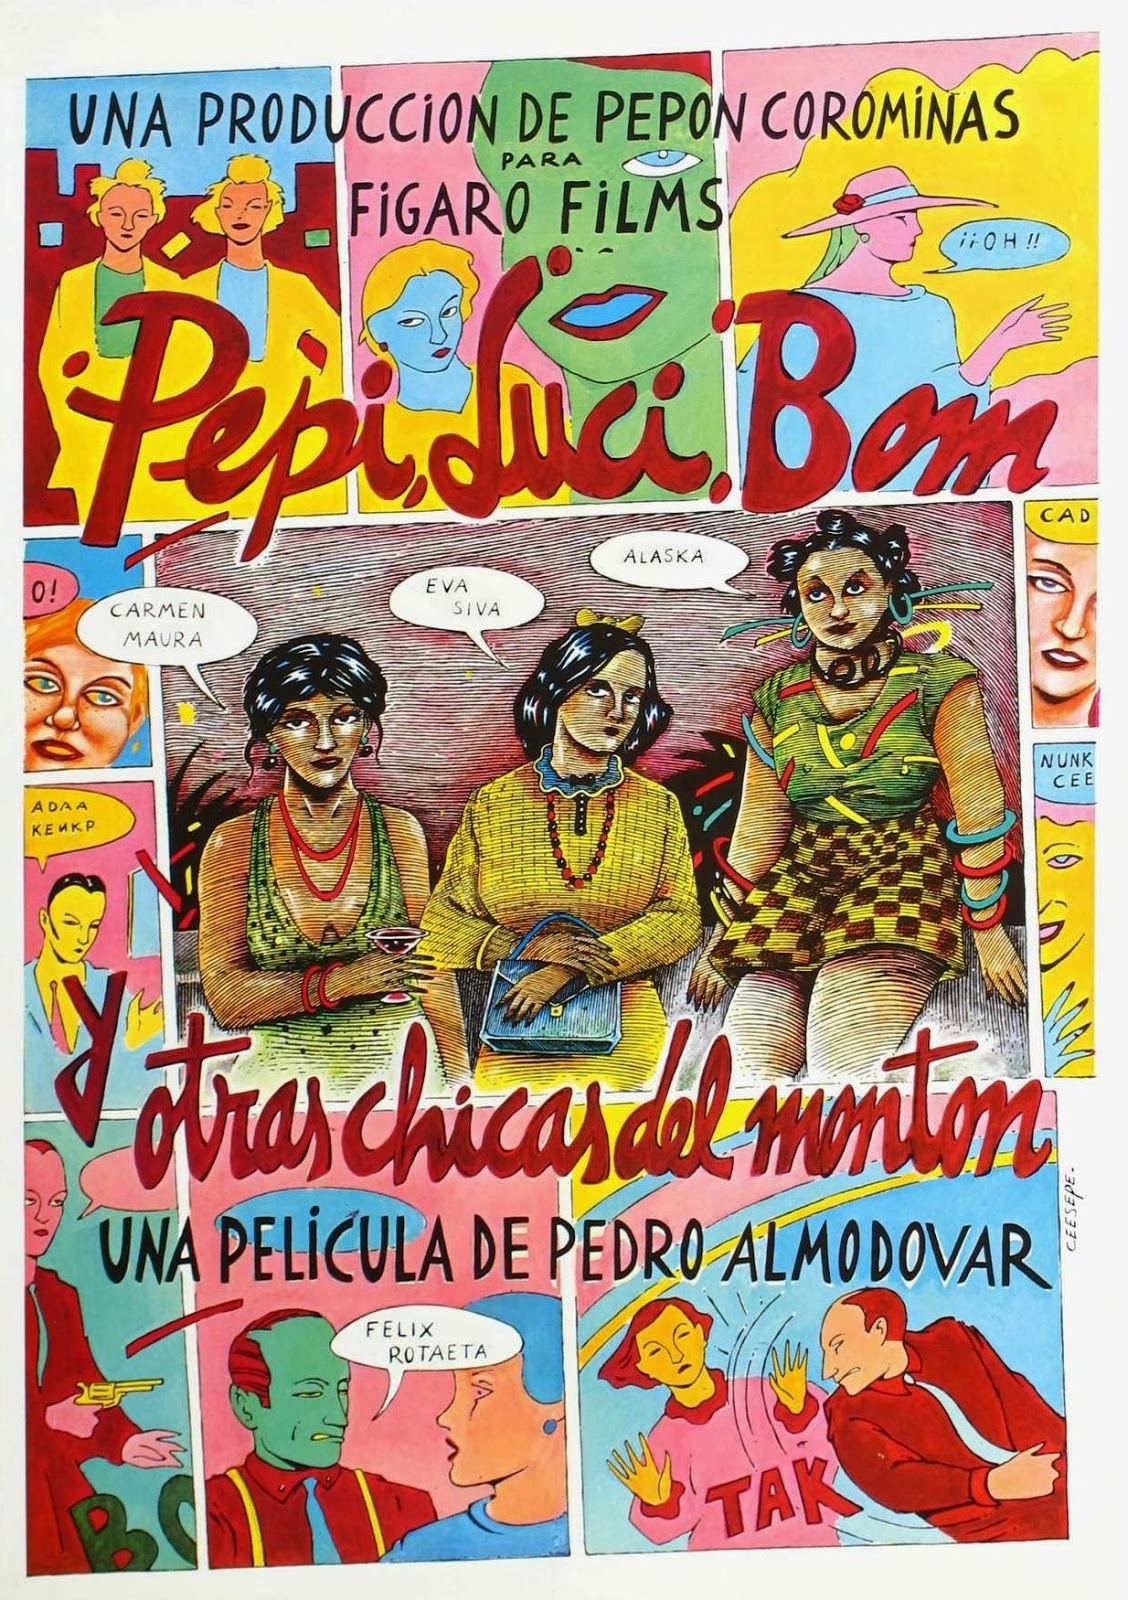 16 – Pepi, Luci, Bom (Pepi, Luci, Bom y otras chicas del montón) – Espanha (1980)